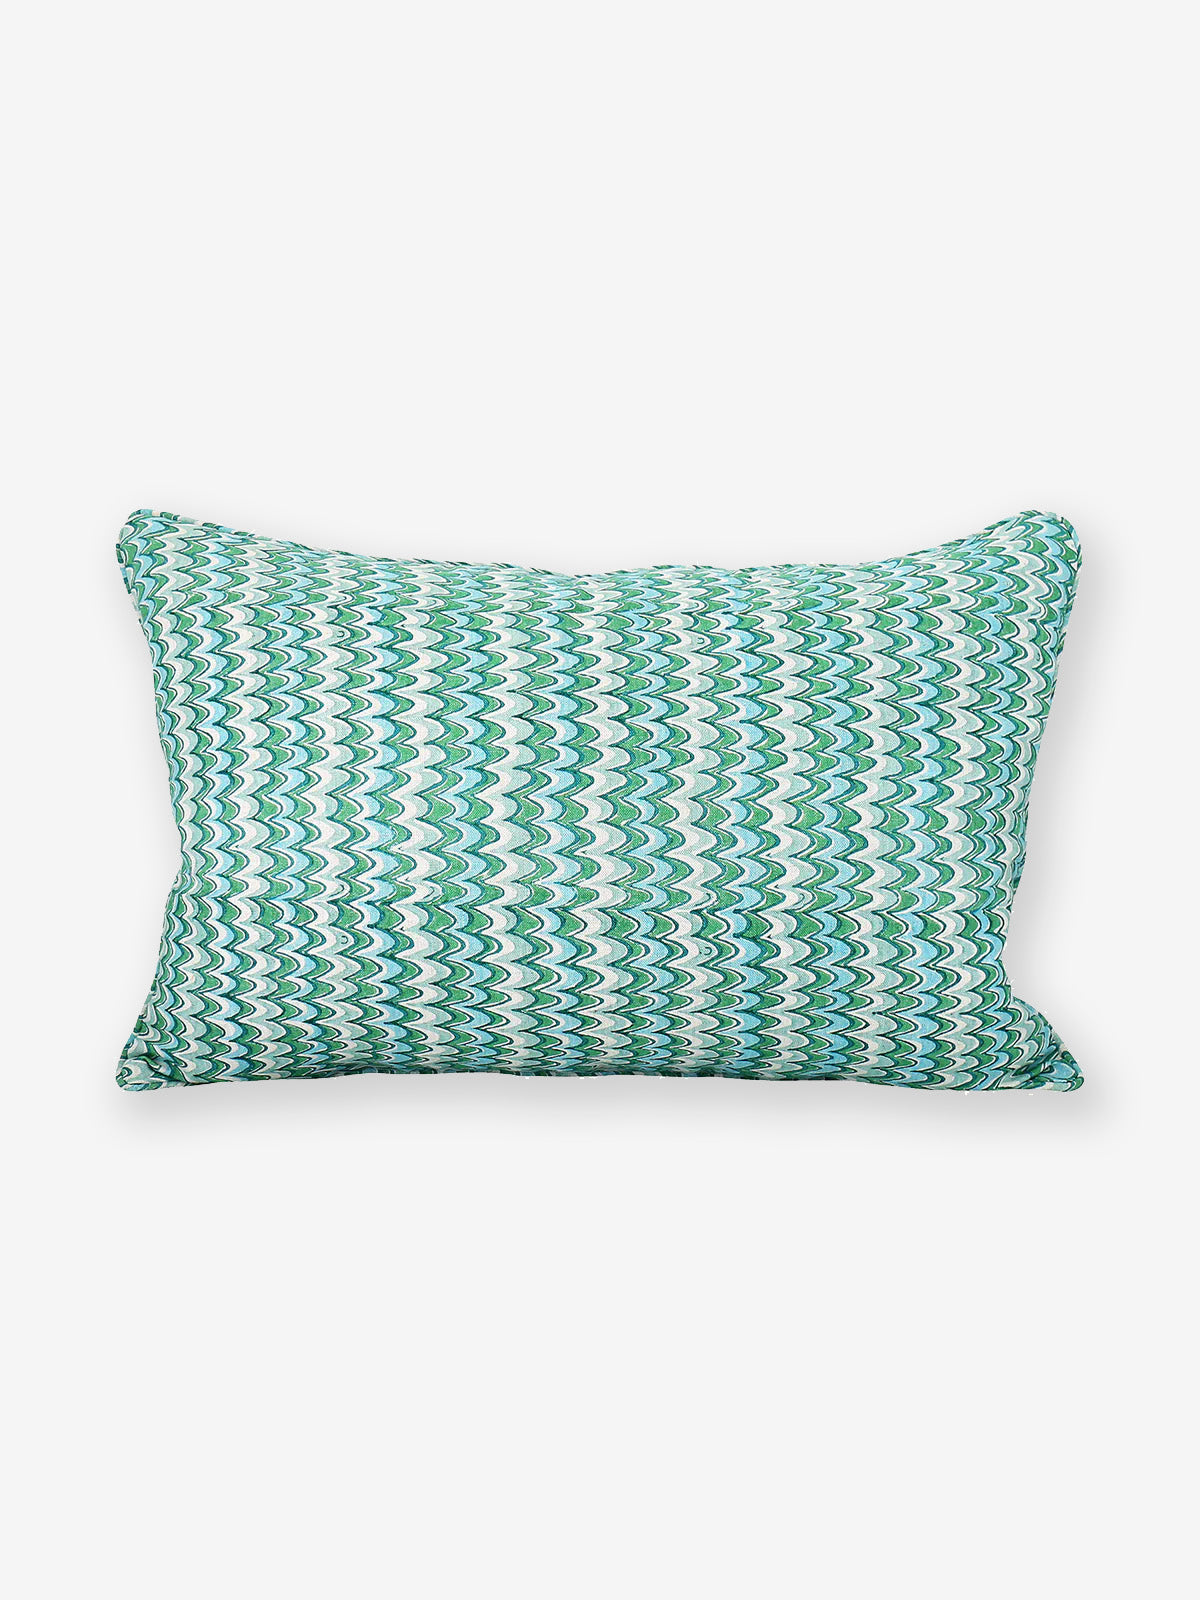 Emerald Firenze Pillow